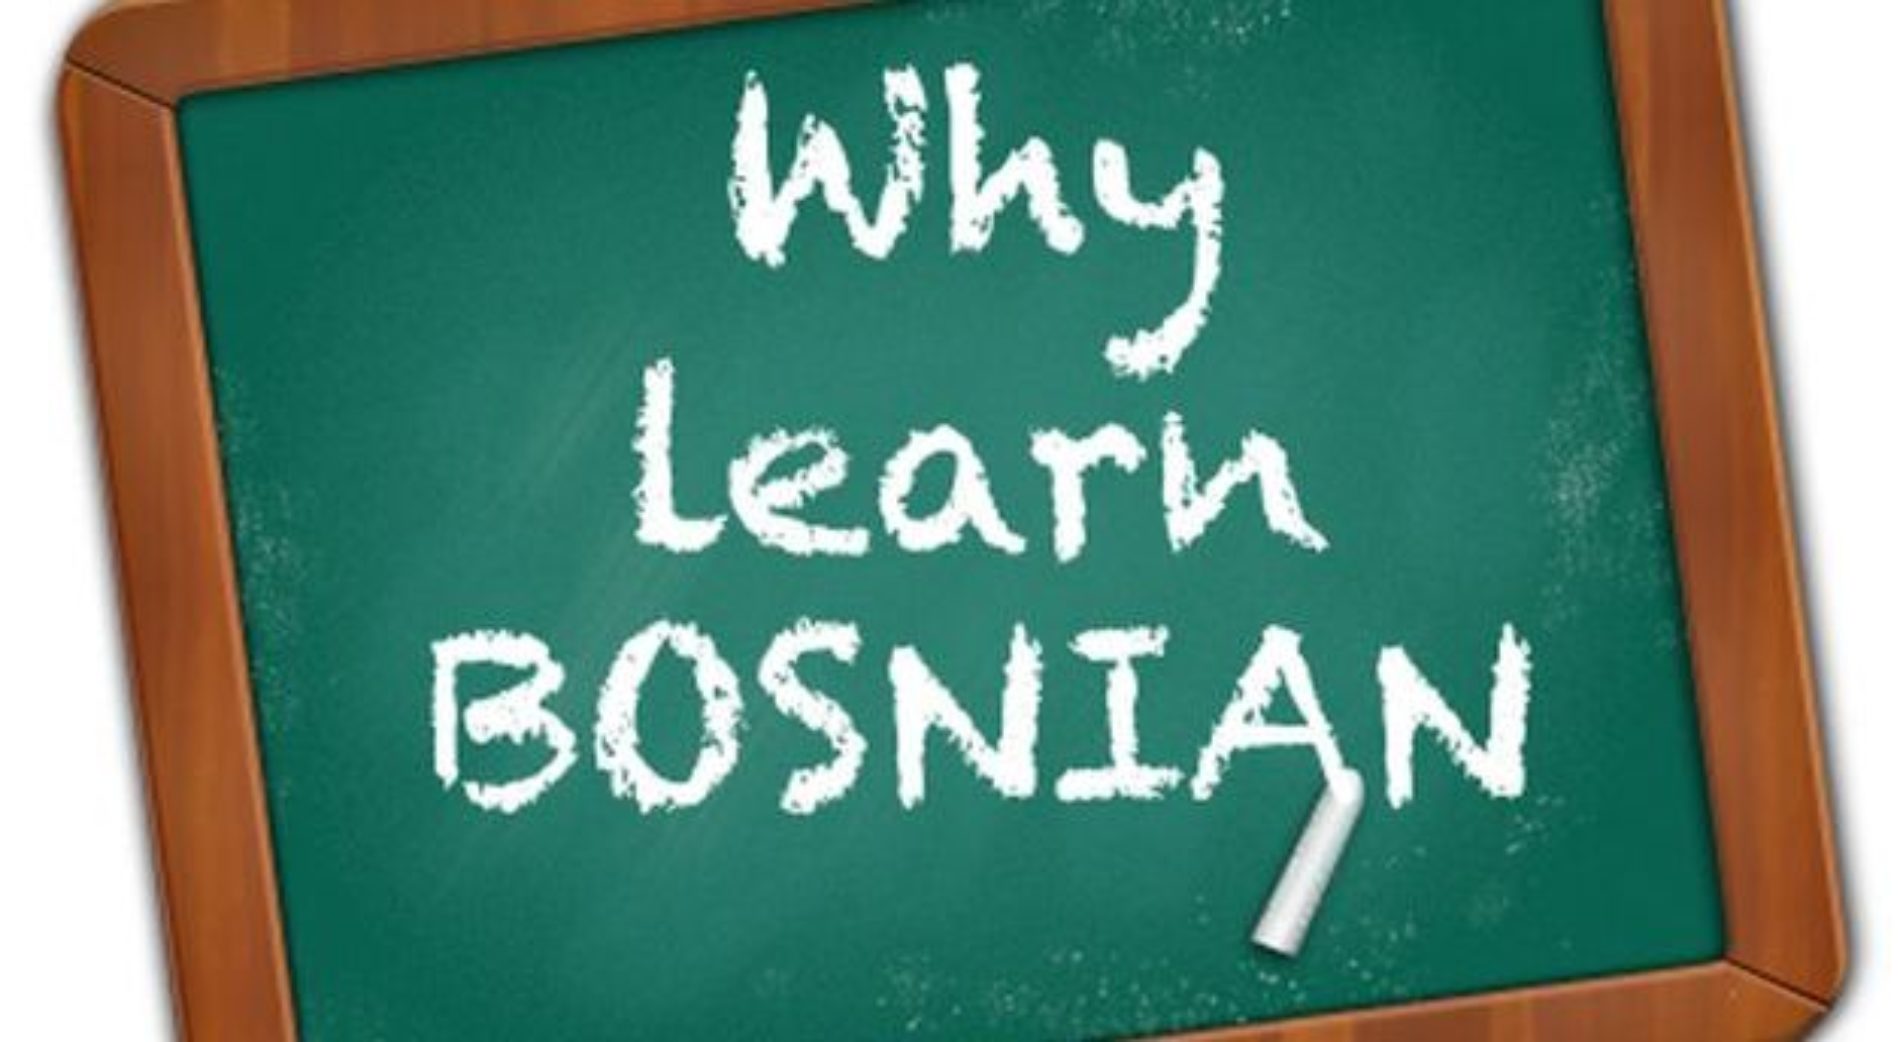 Brzi vodič za bosanski jezik: Muškarce zovete buraz ili bolan, dok se ženama obraćate sa bona